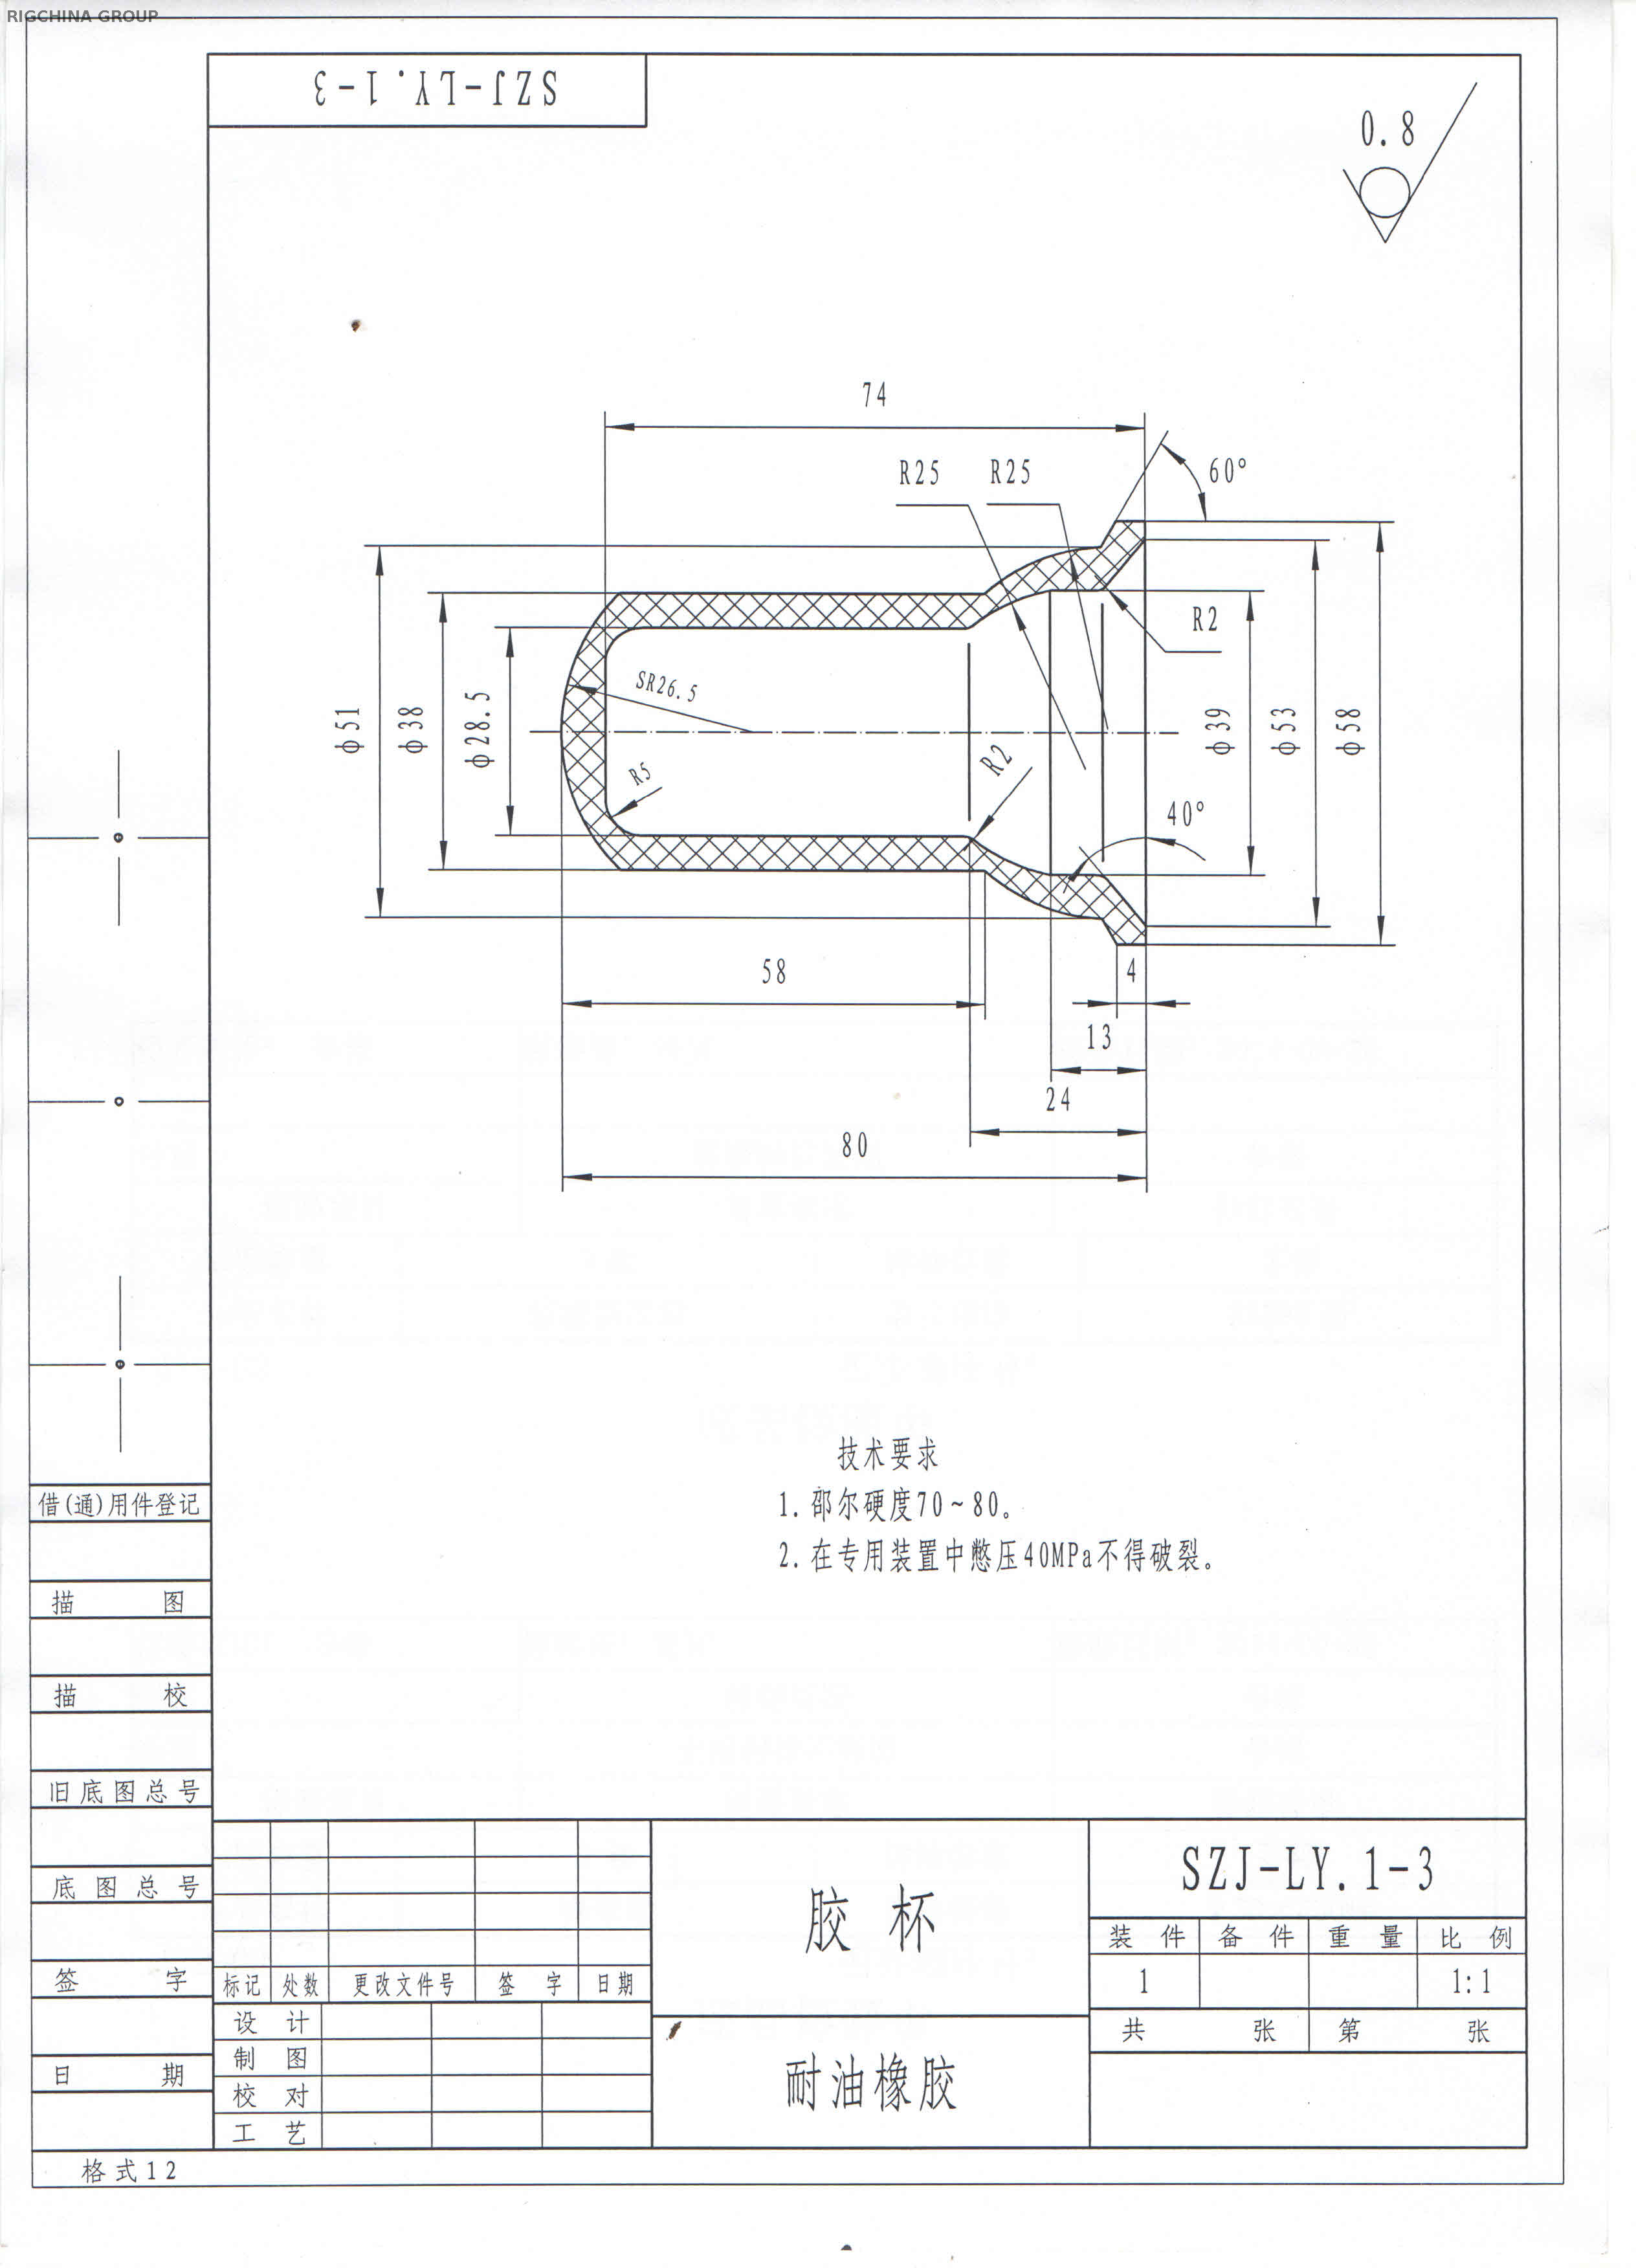 单指针 1:1 压力指示器系统，型号 GA-110